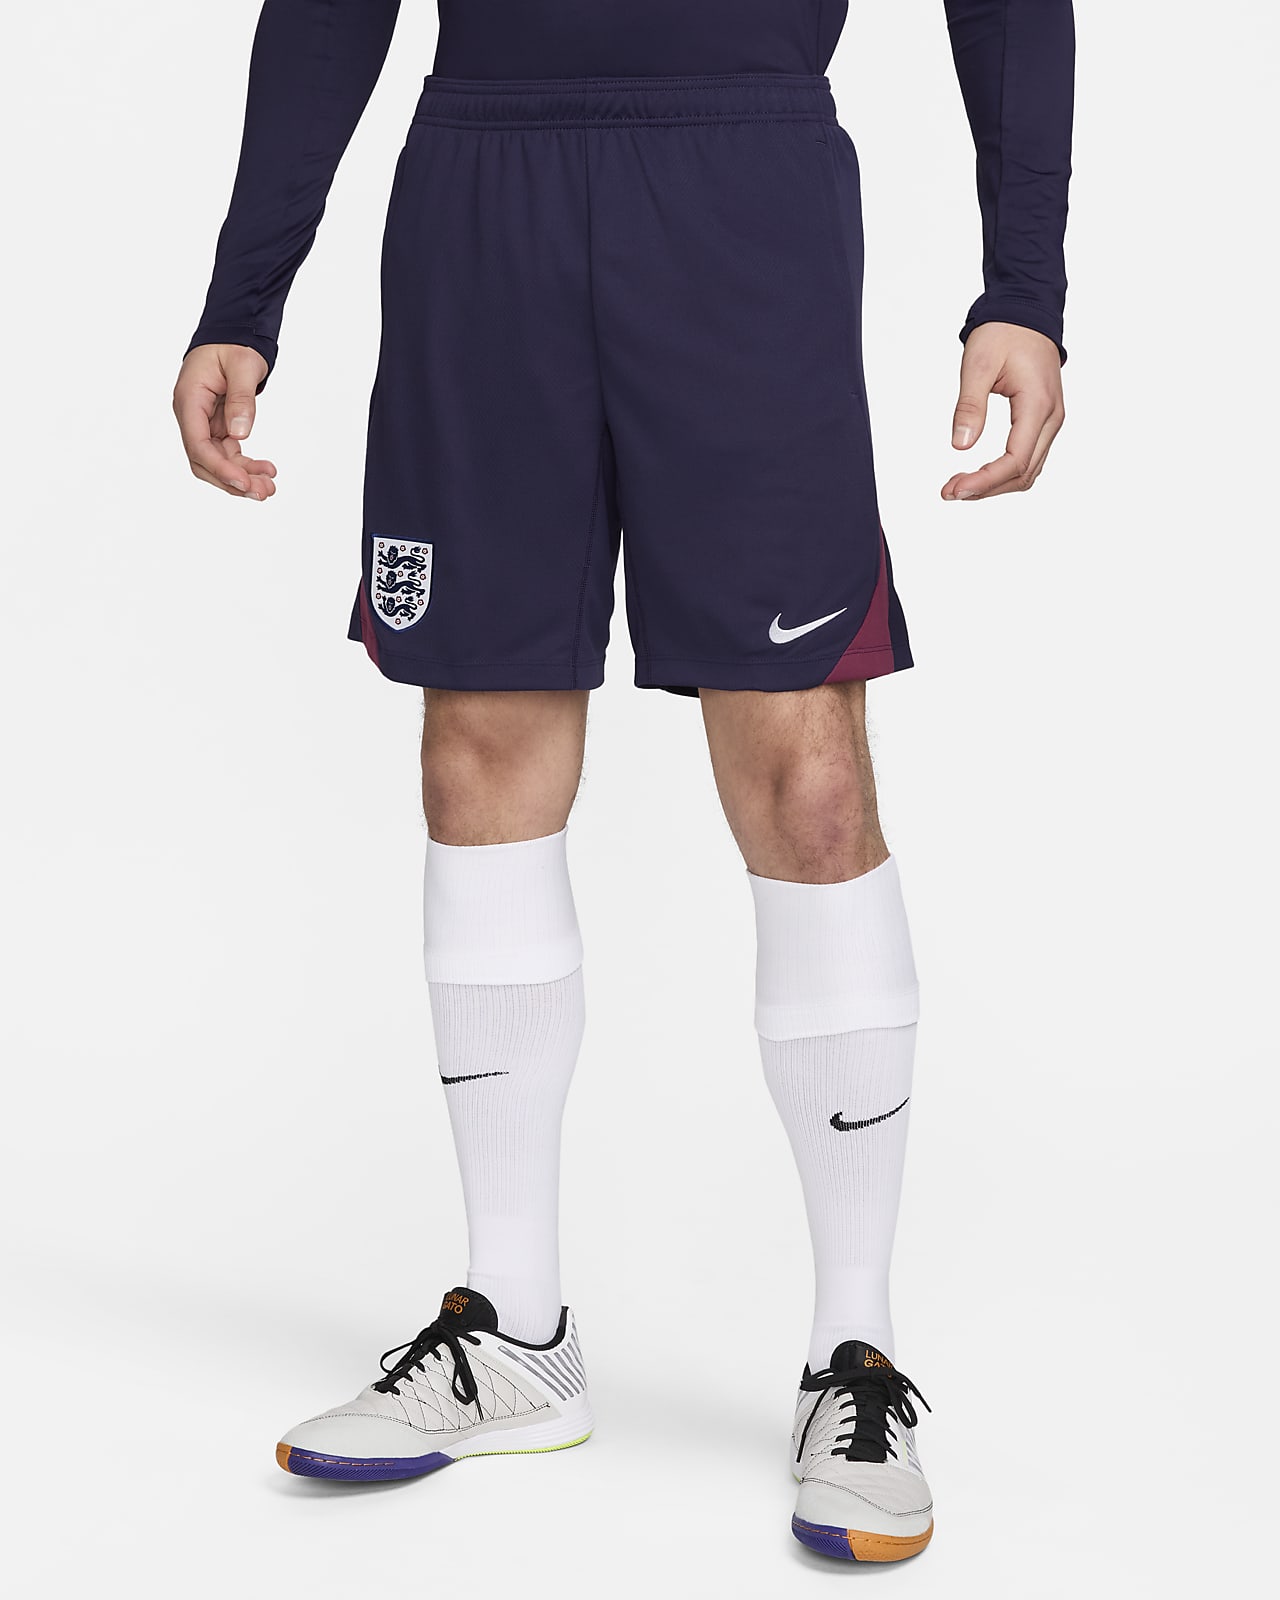 England Strike Nike Dri-FIT Fußballshorts aus Strickmaterial (Herren)